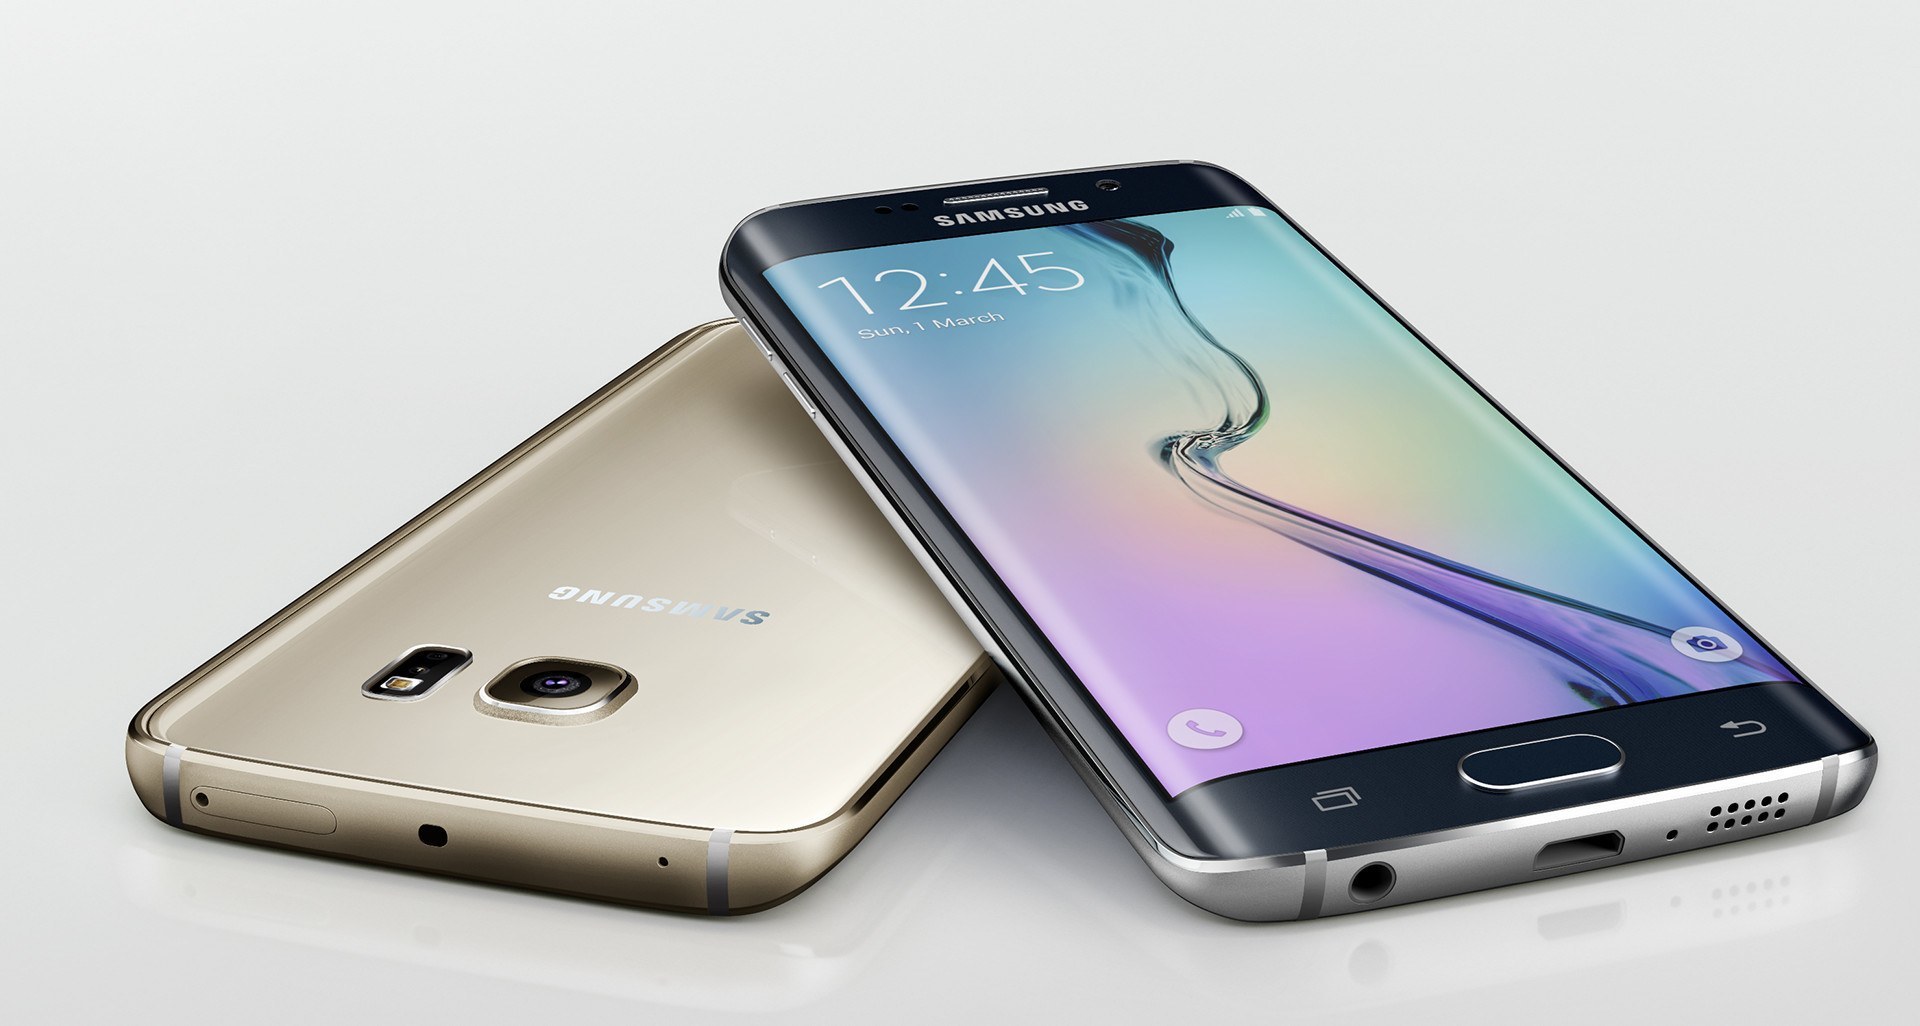 Samsung mobile price in Nepal